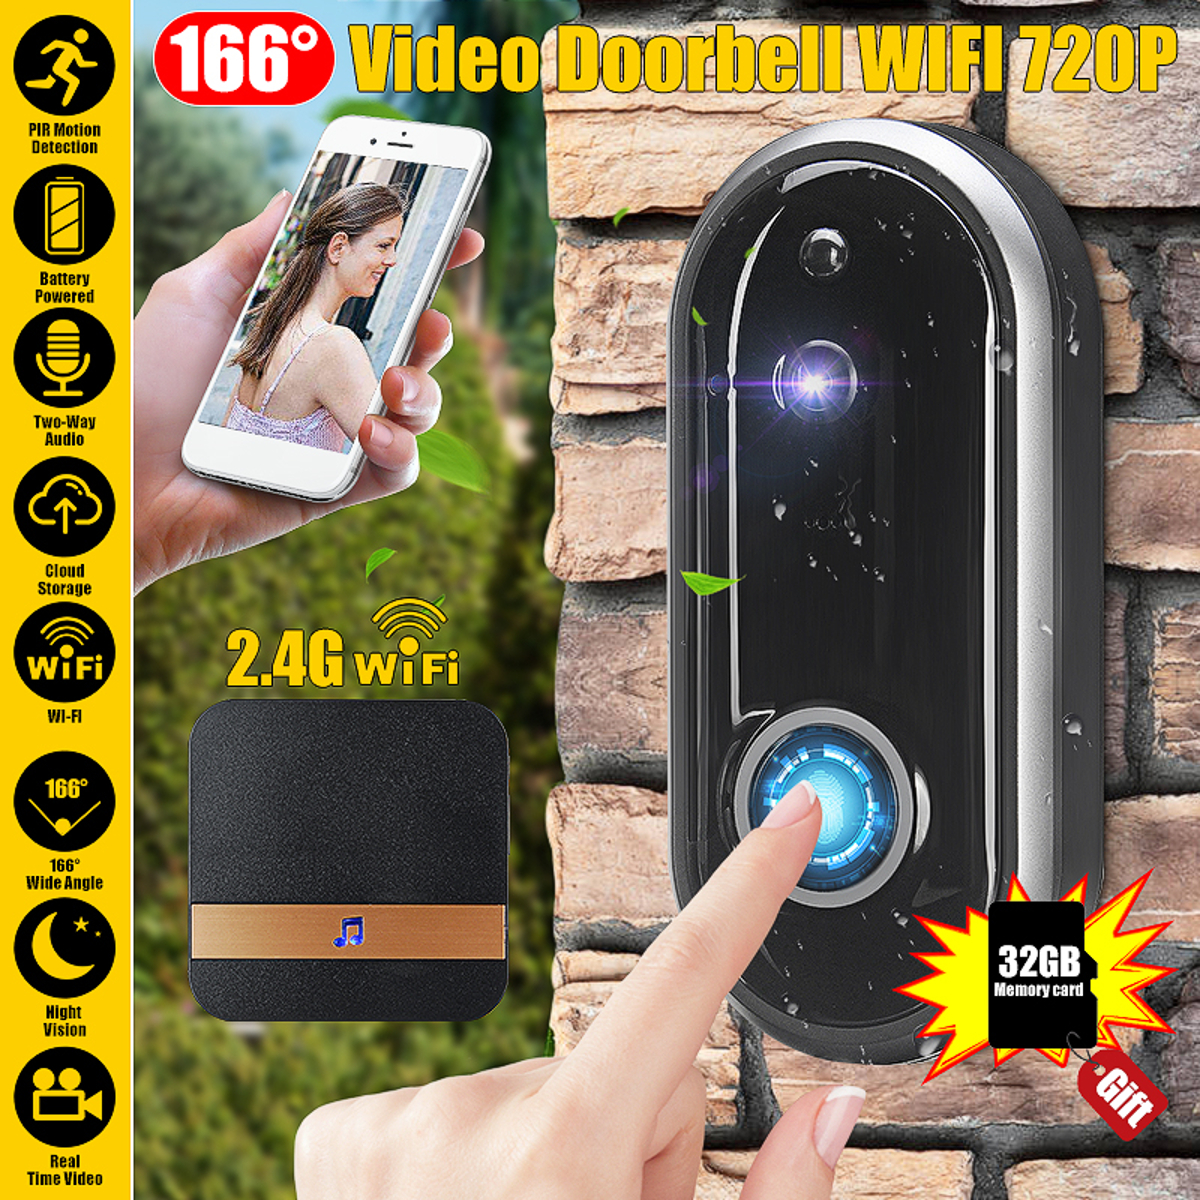 Video-Doorbell-Camera-Wireless-WiFi-Security-Phone-Ring-Door-Bell-Intercom-720P-1680633-5